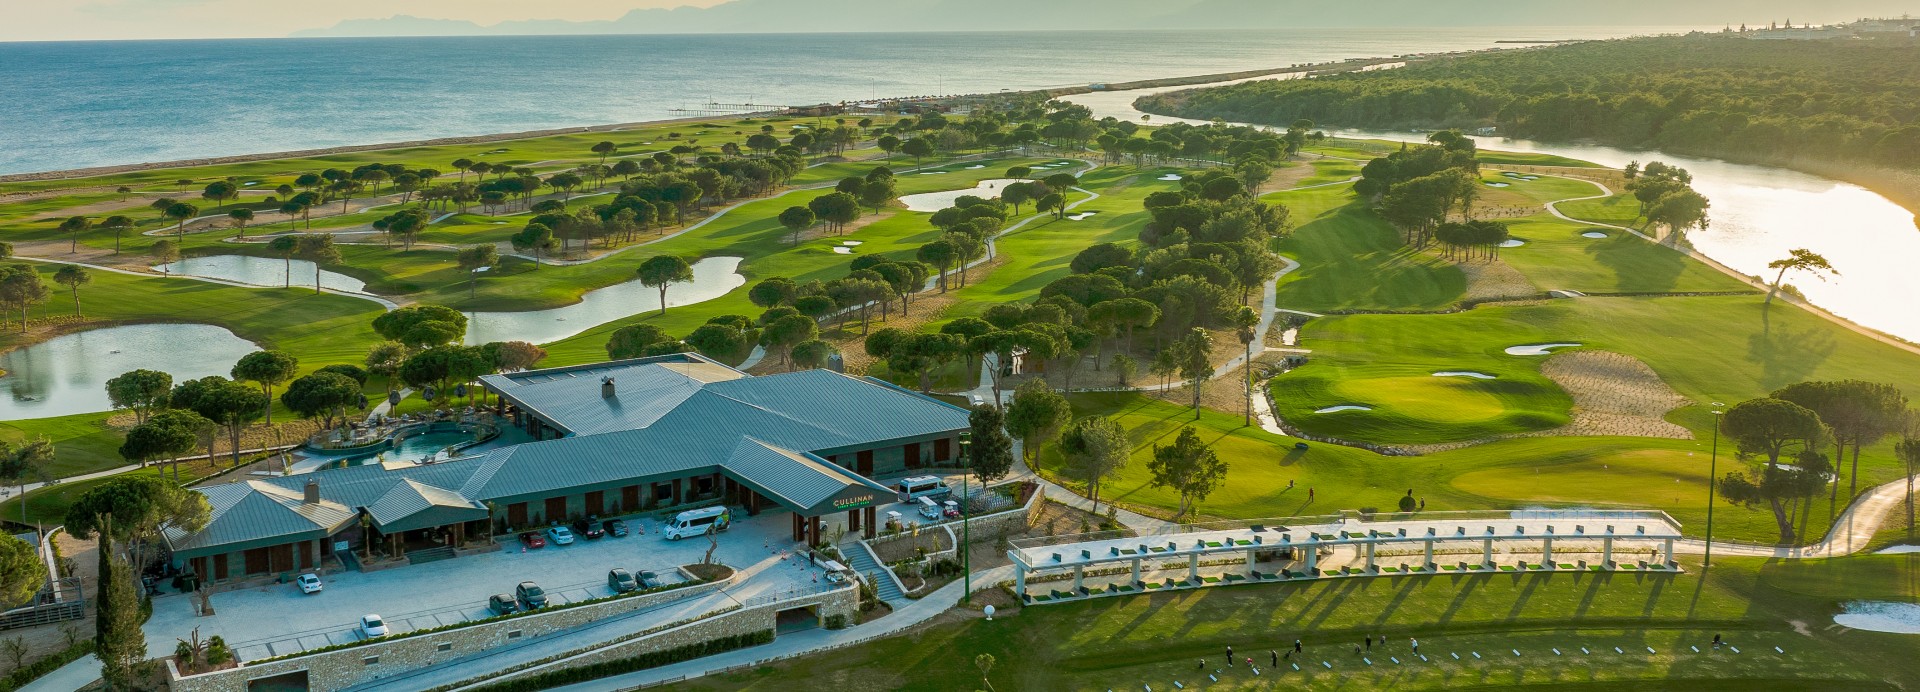 Cullinan Links Olympos – Titanic Golf Club  | Golfové zájezdy, golfová dovolená, luxusní golf